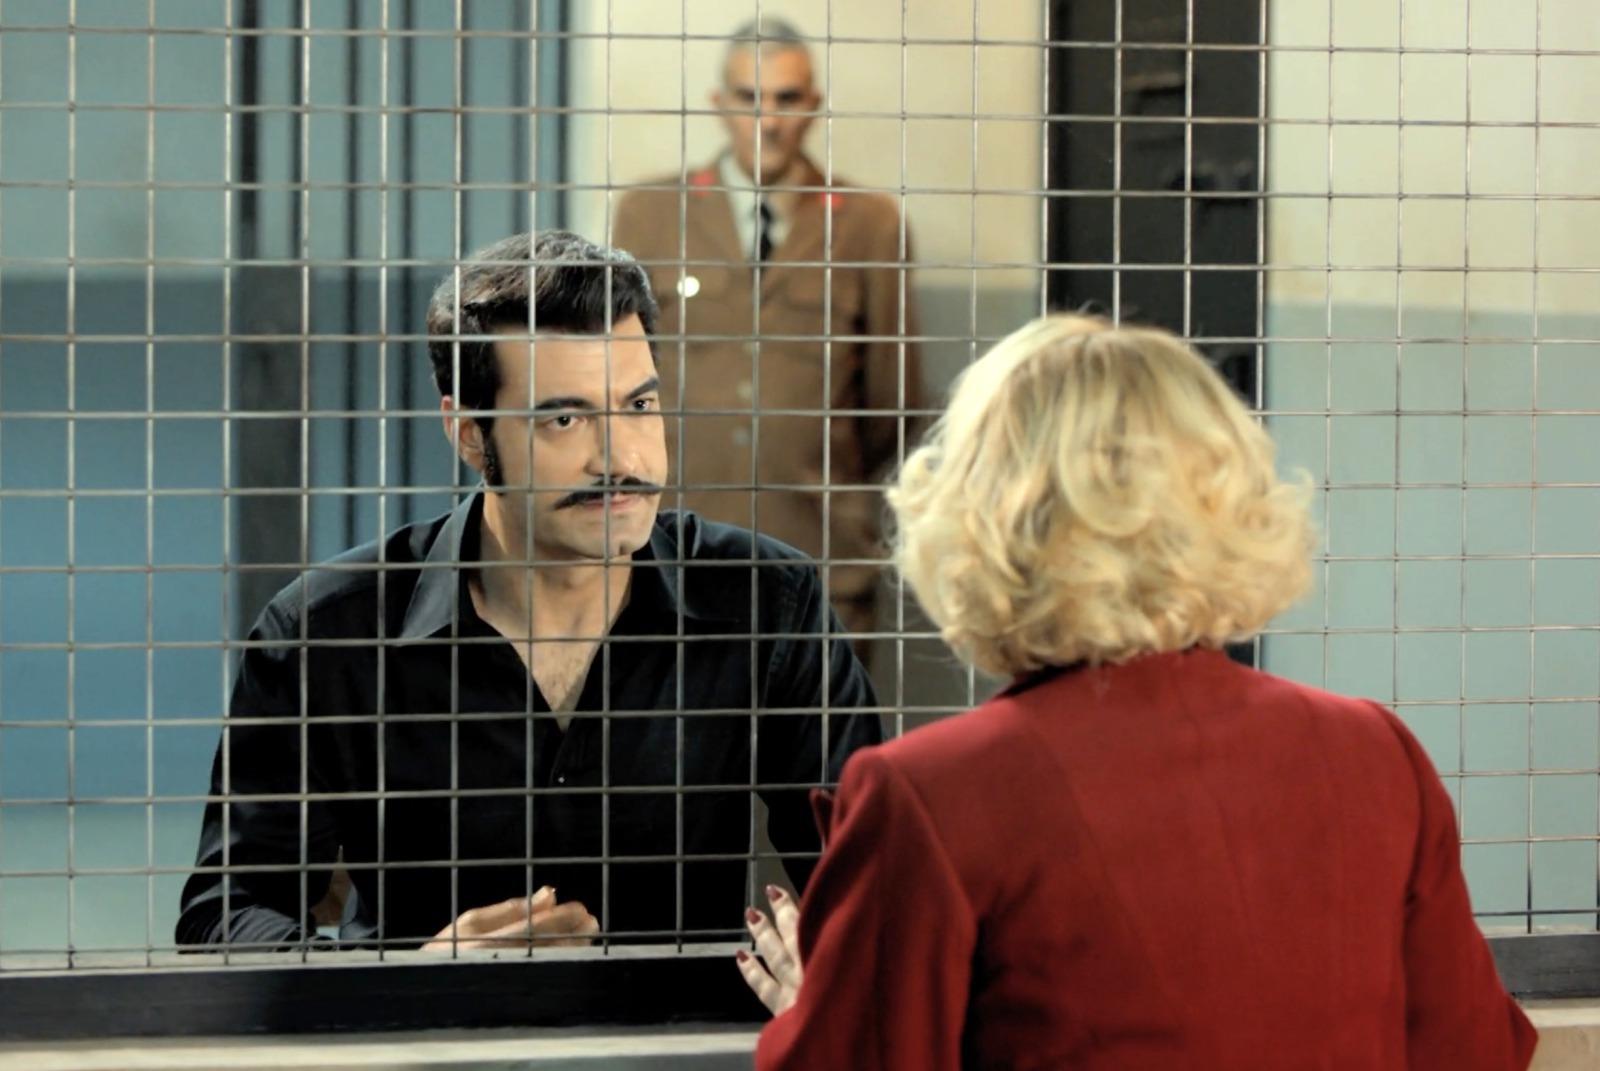 Sermin visita a Demir en la cárcel e insiste en que Sevda y Ümit deben ser familia, ¡no parará hasta demostrarlo!